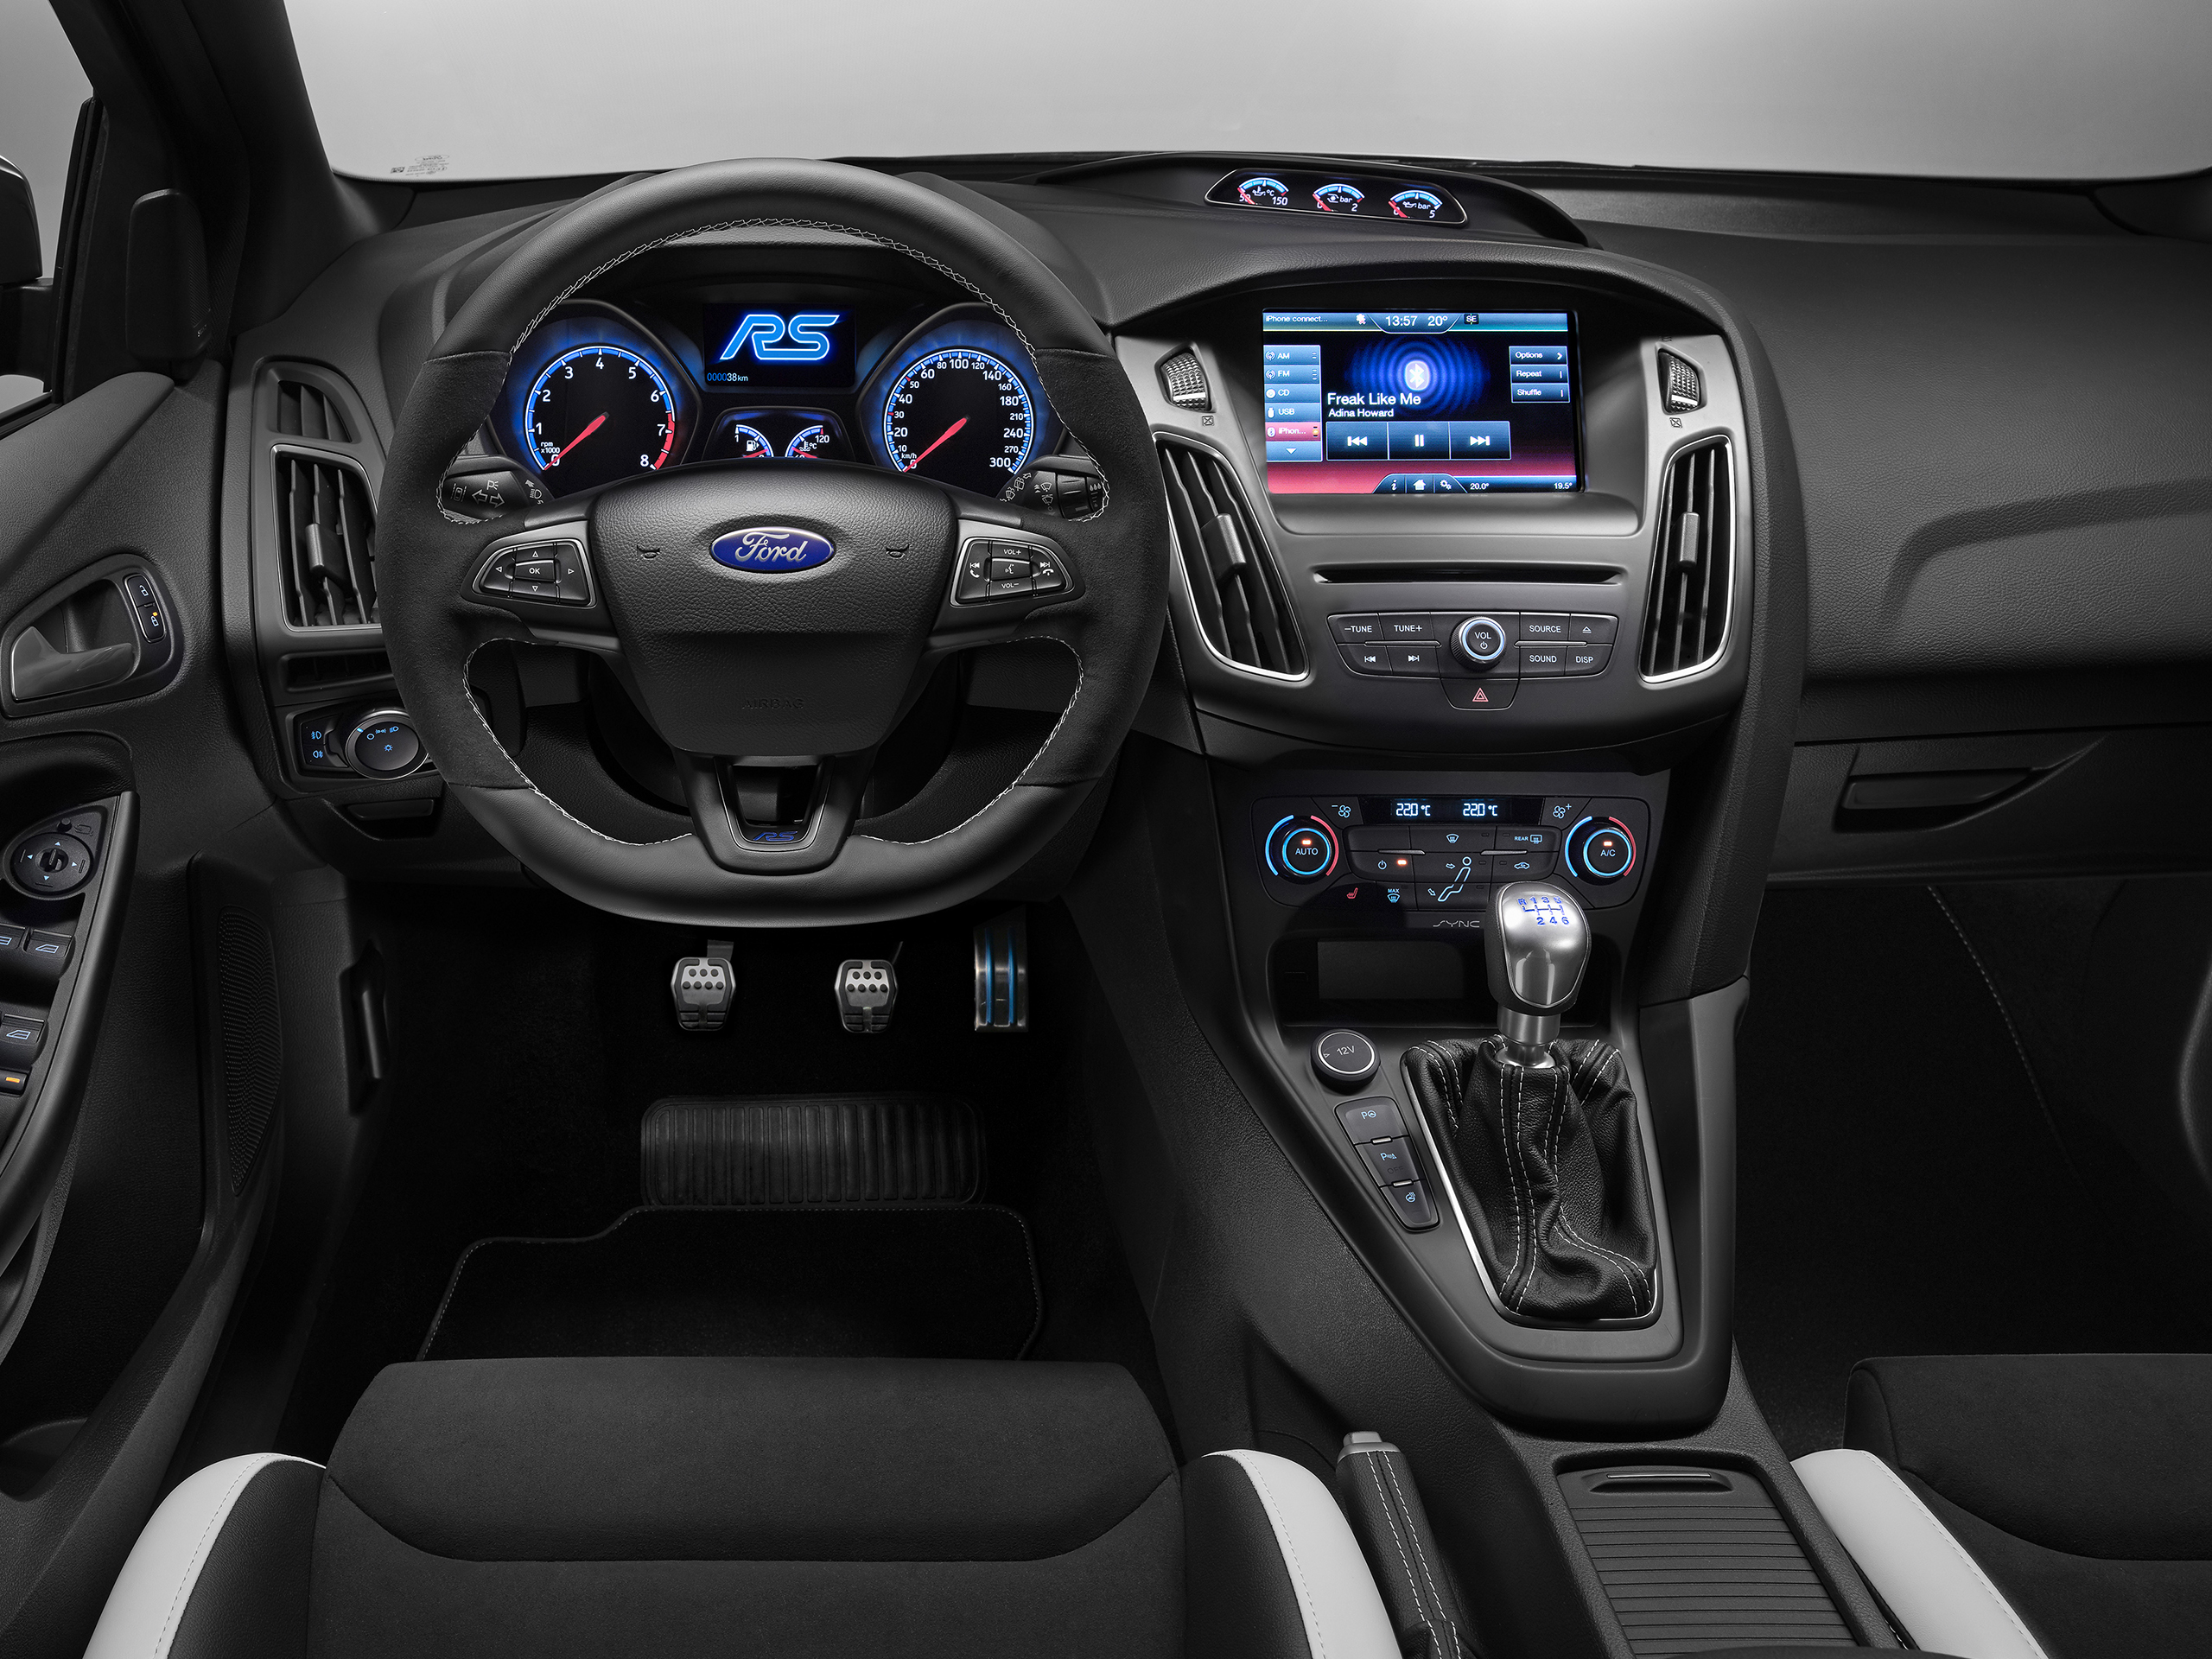 Ford Focus Rs 2016 Preis Und Motoren Autozeitung De